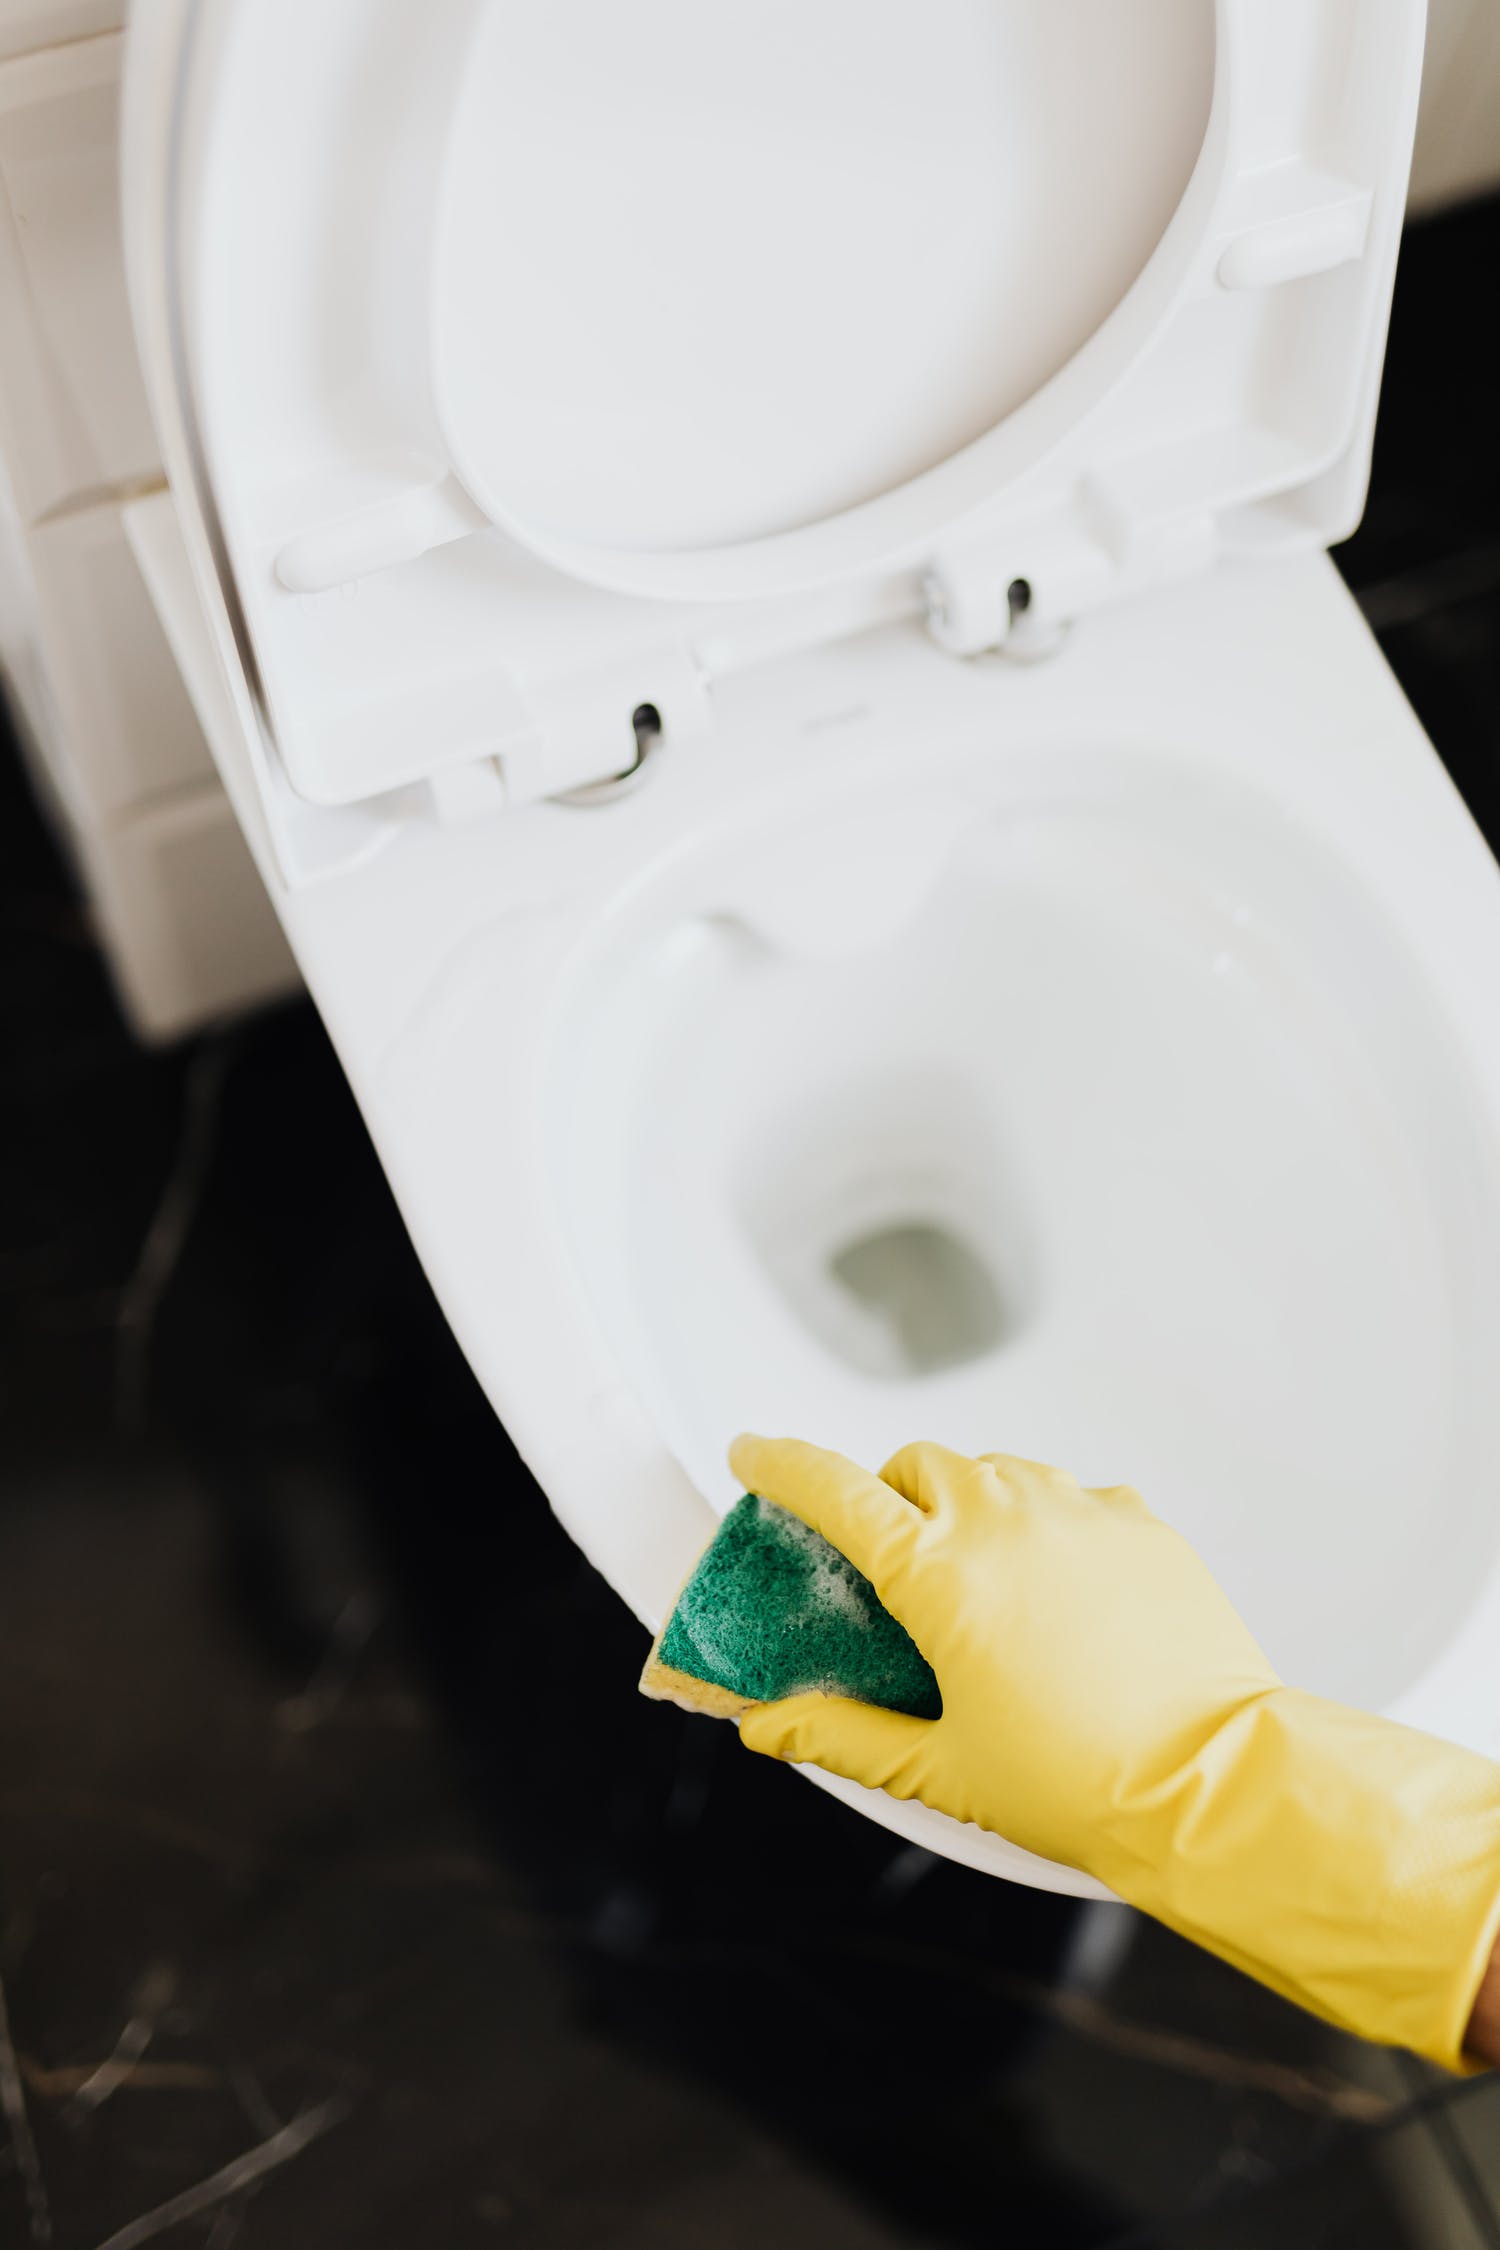 Comment nettoyer efficacement les joints d’une salle de bain ?